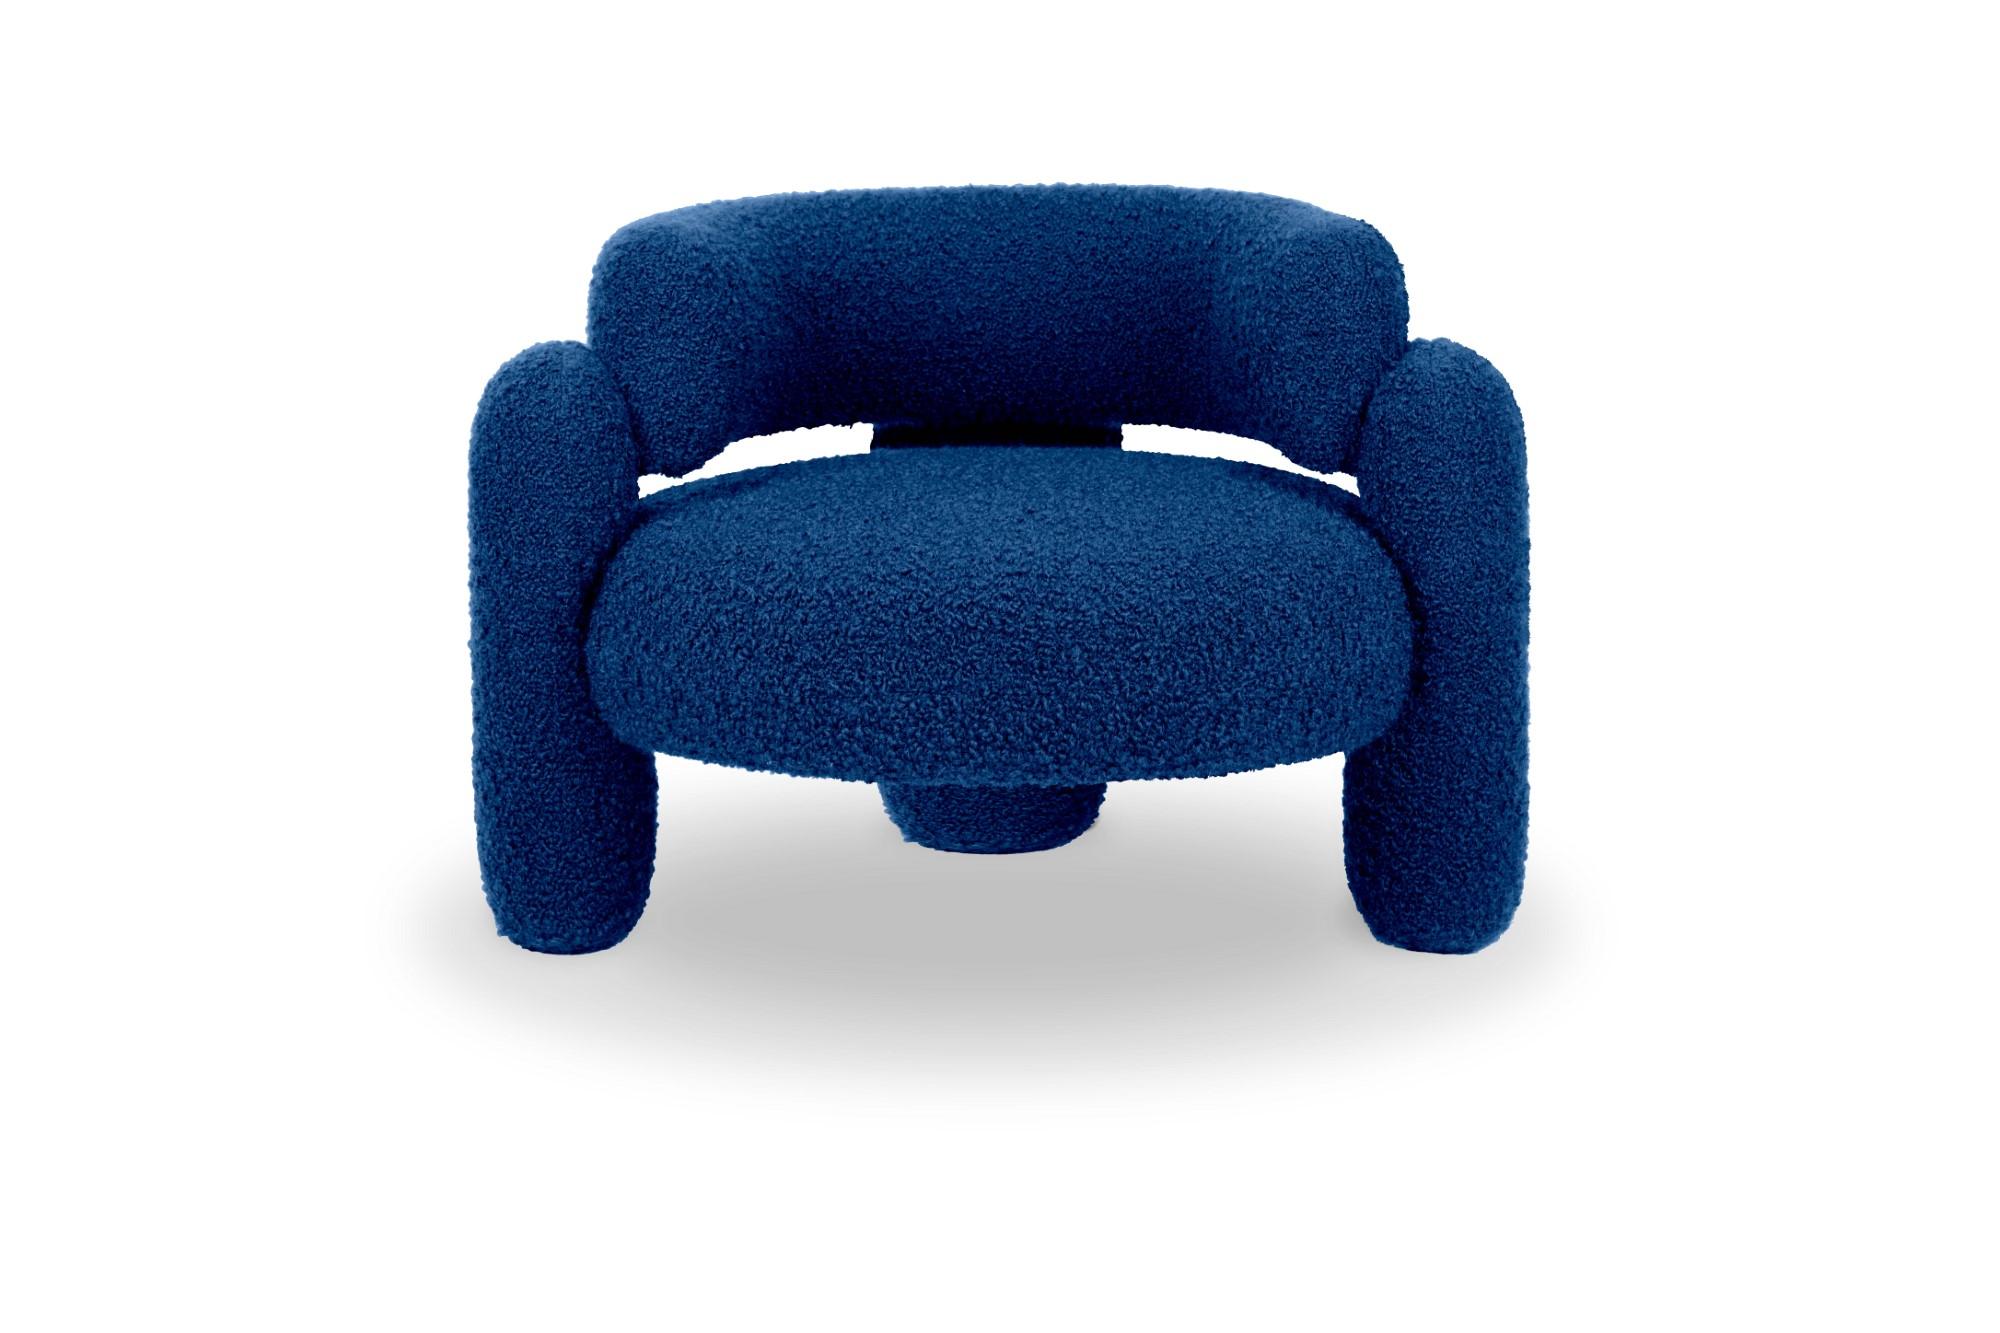 Embrace Kobalt-Sessel von Royal Stranger
Abmessungen: B 96 x T 85 x H 68 cm.
Es sind verschiedene Farben und Ausführungen der Polsterung erhältlich. Bitte kontaktieren Sie uns.
MATERIALIEN: Polstermöbel.

Der Embrace Armchair ist eine Komposition